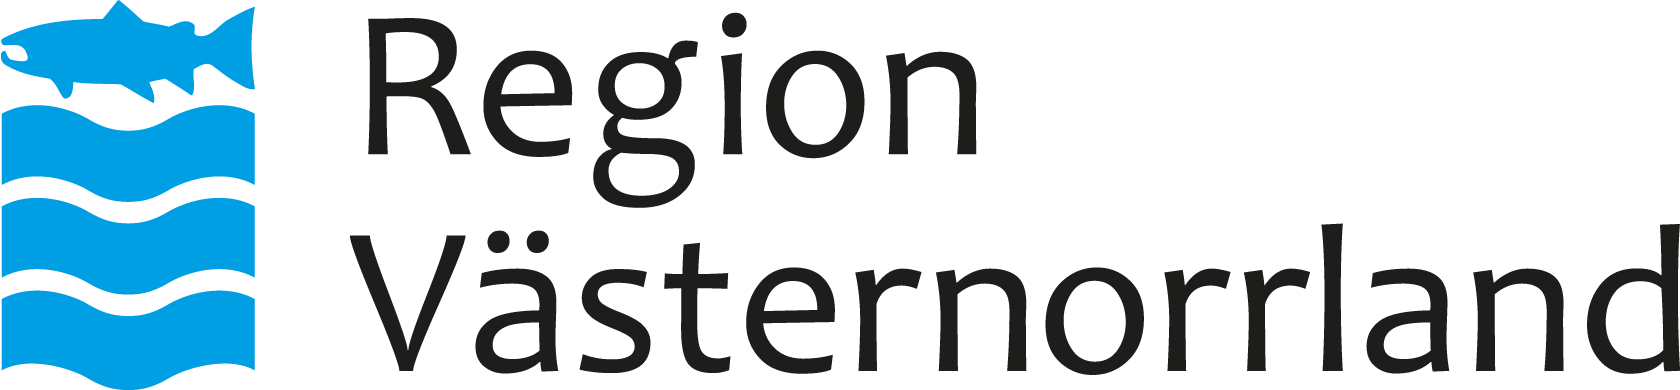 Region Västernorrland